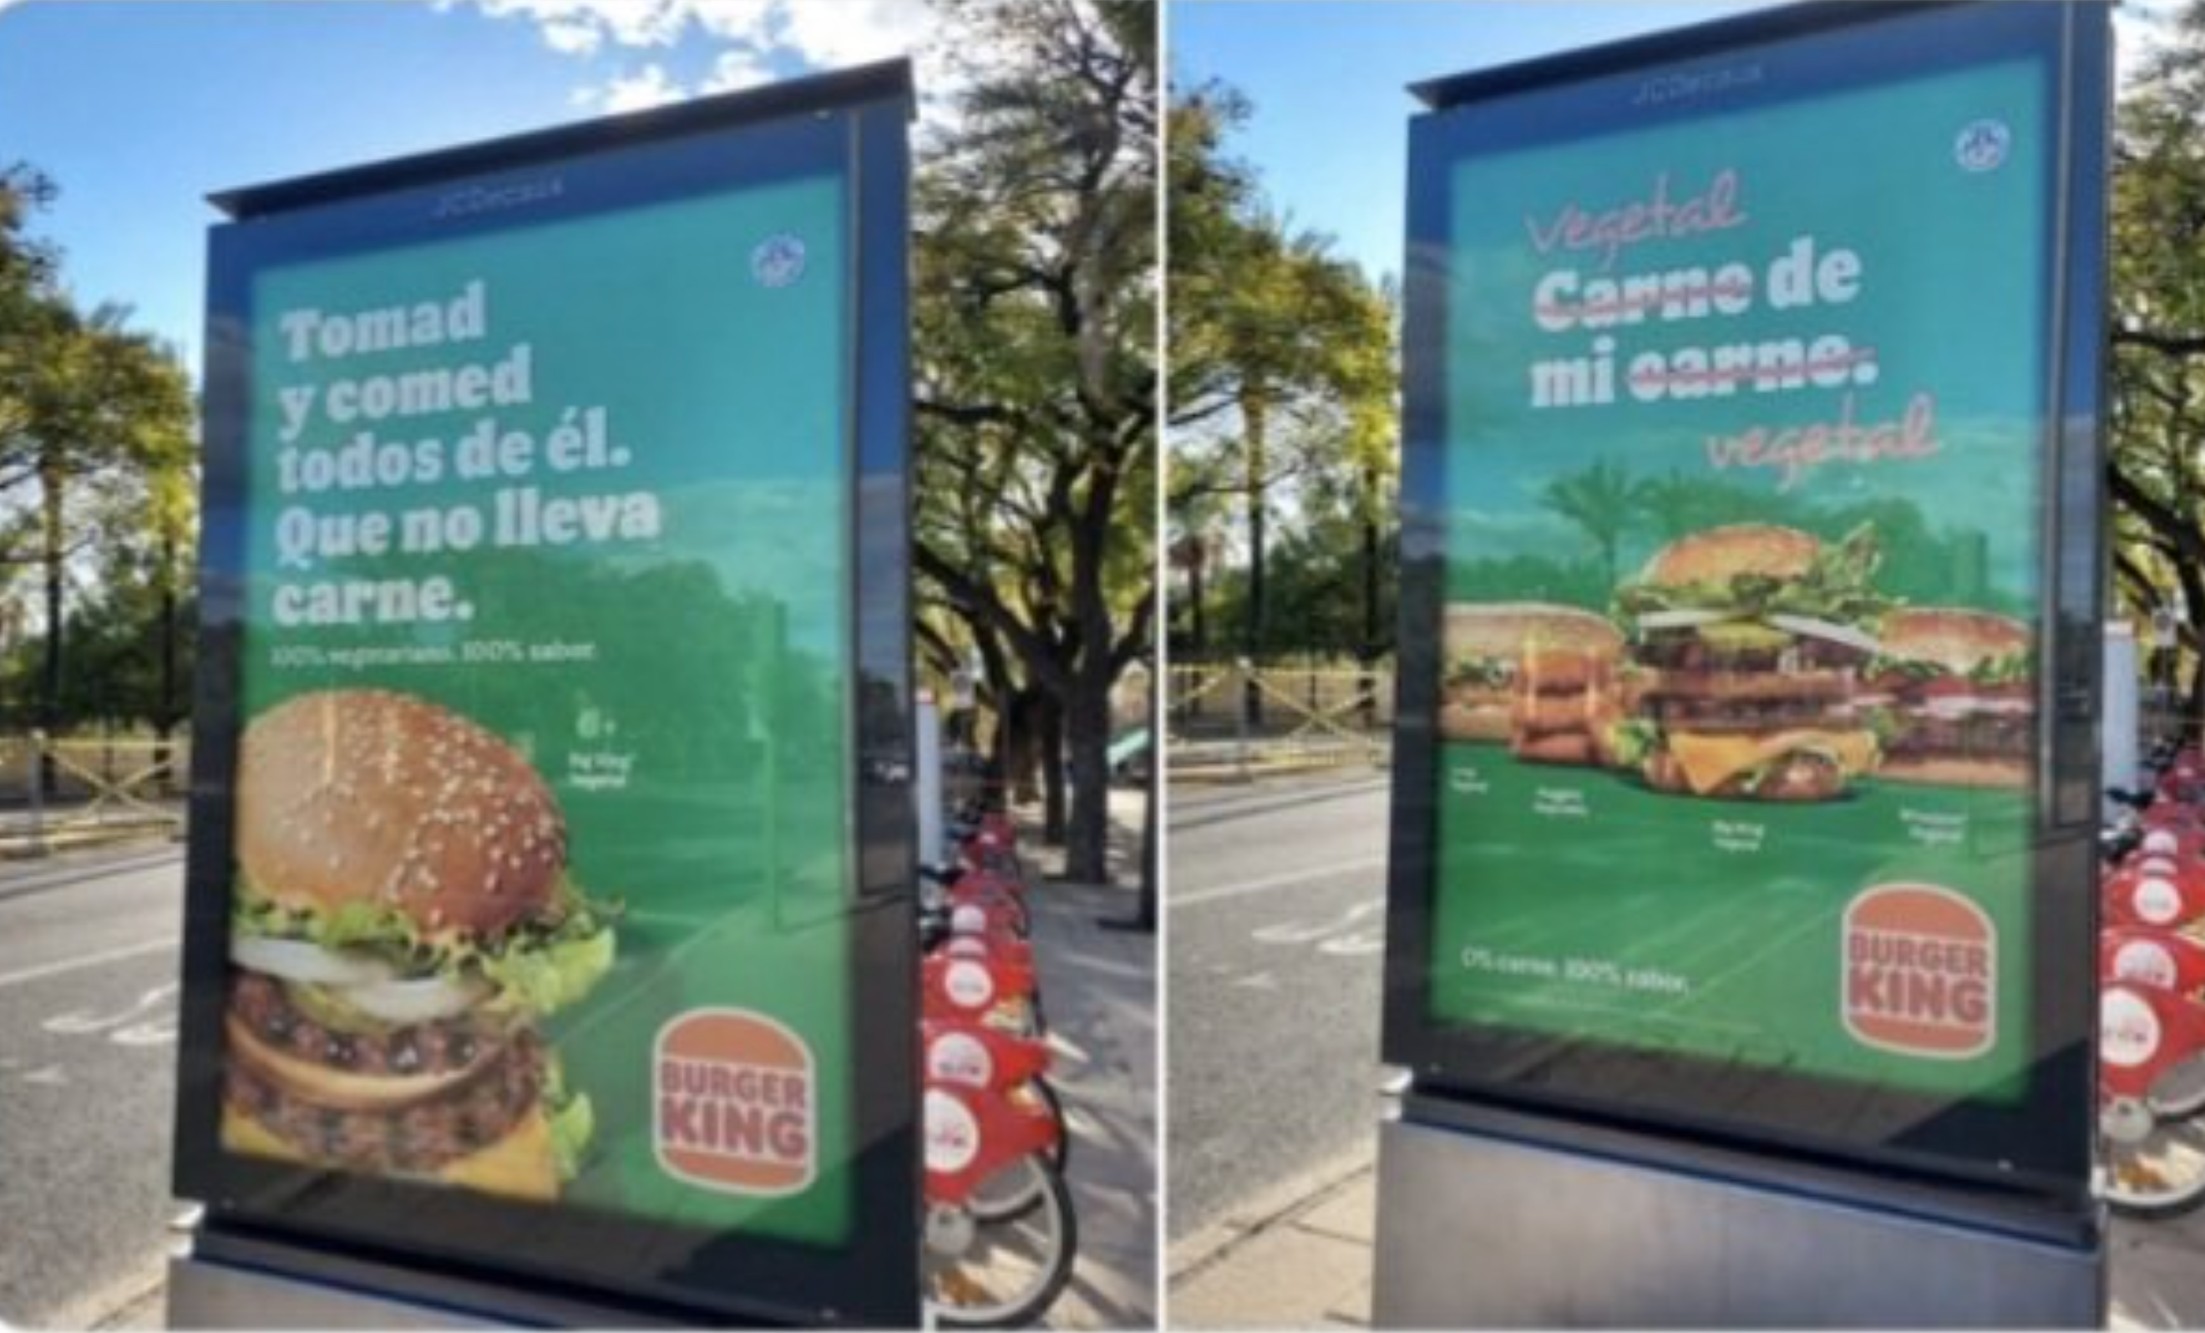 La nueva campaña de Burger King en Sevilla despertó comentarios positivos y en contra.